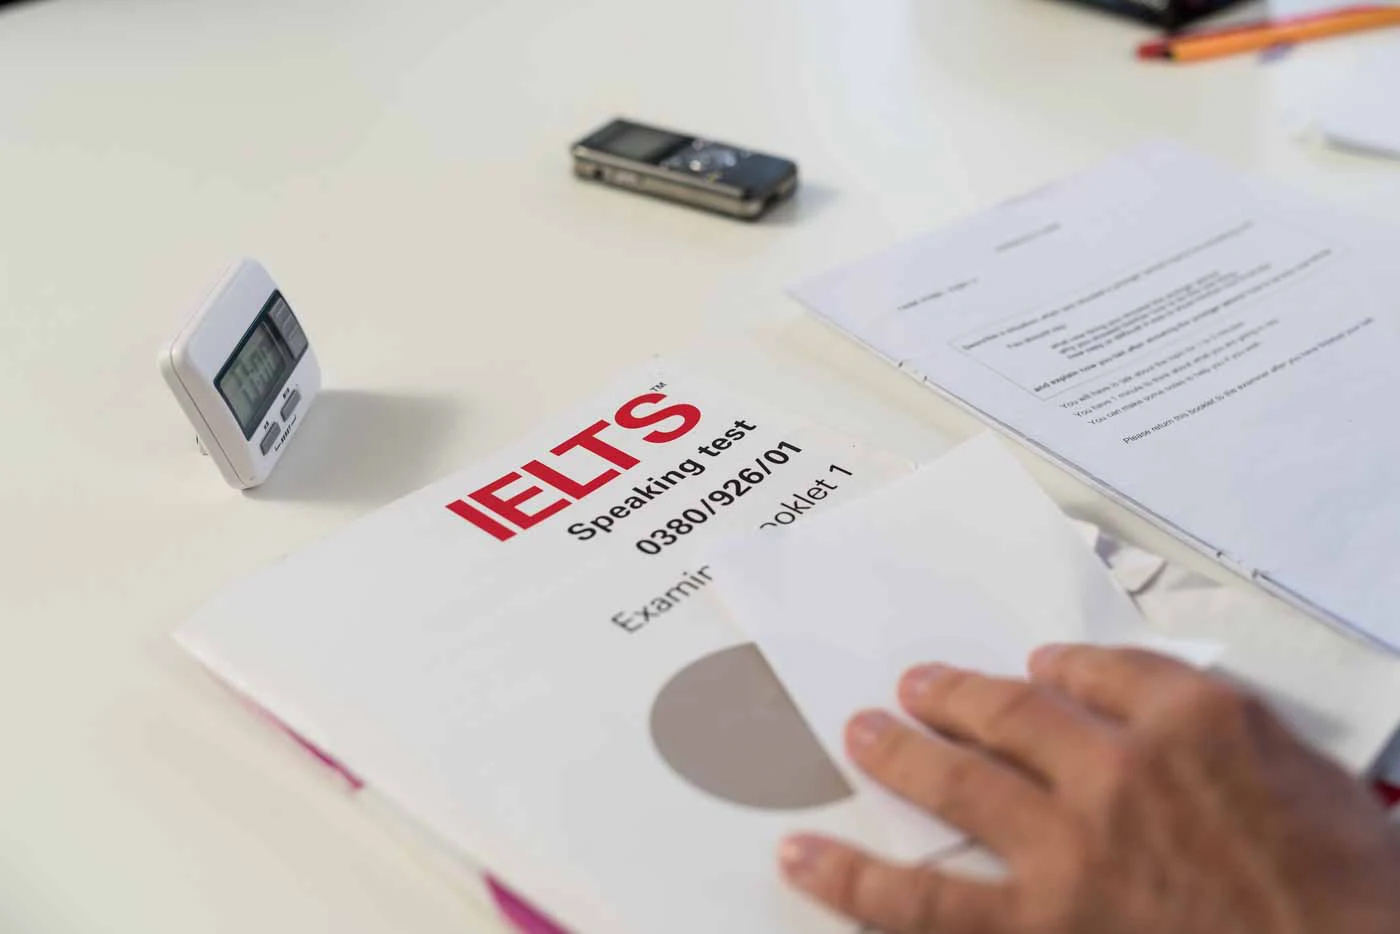 Trong thời gian tới, sẽ có hướng dẫn xử lý cụ thể về những chứng chỉ IELTS cấp không đúng theo quy định